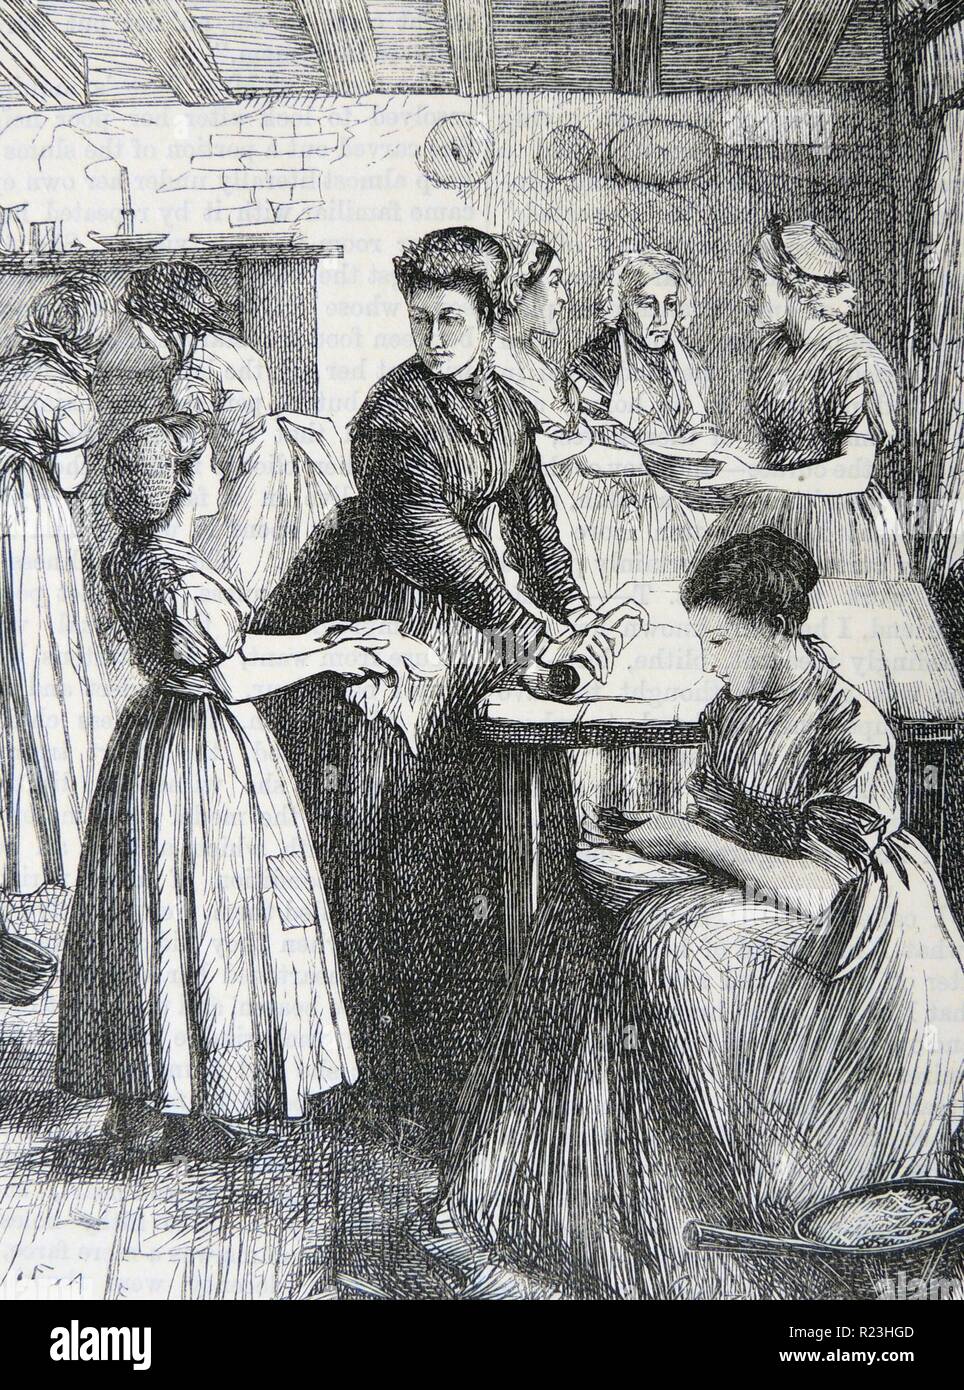 Lehre armen Frauen des East End von London die beste Verwendung Ihrer begrenzten kochen Materialien und Einrichtungen zu machen. Abbildung von Francis Arthur Fraser (1865-1898), London, 1869. Stockfoto